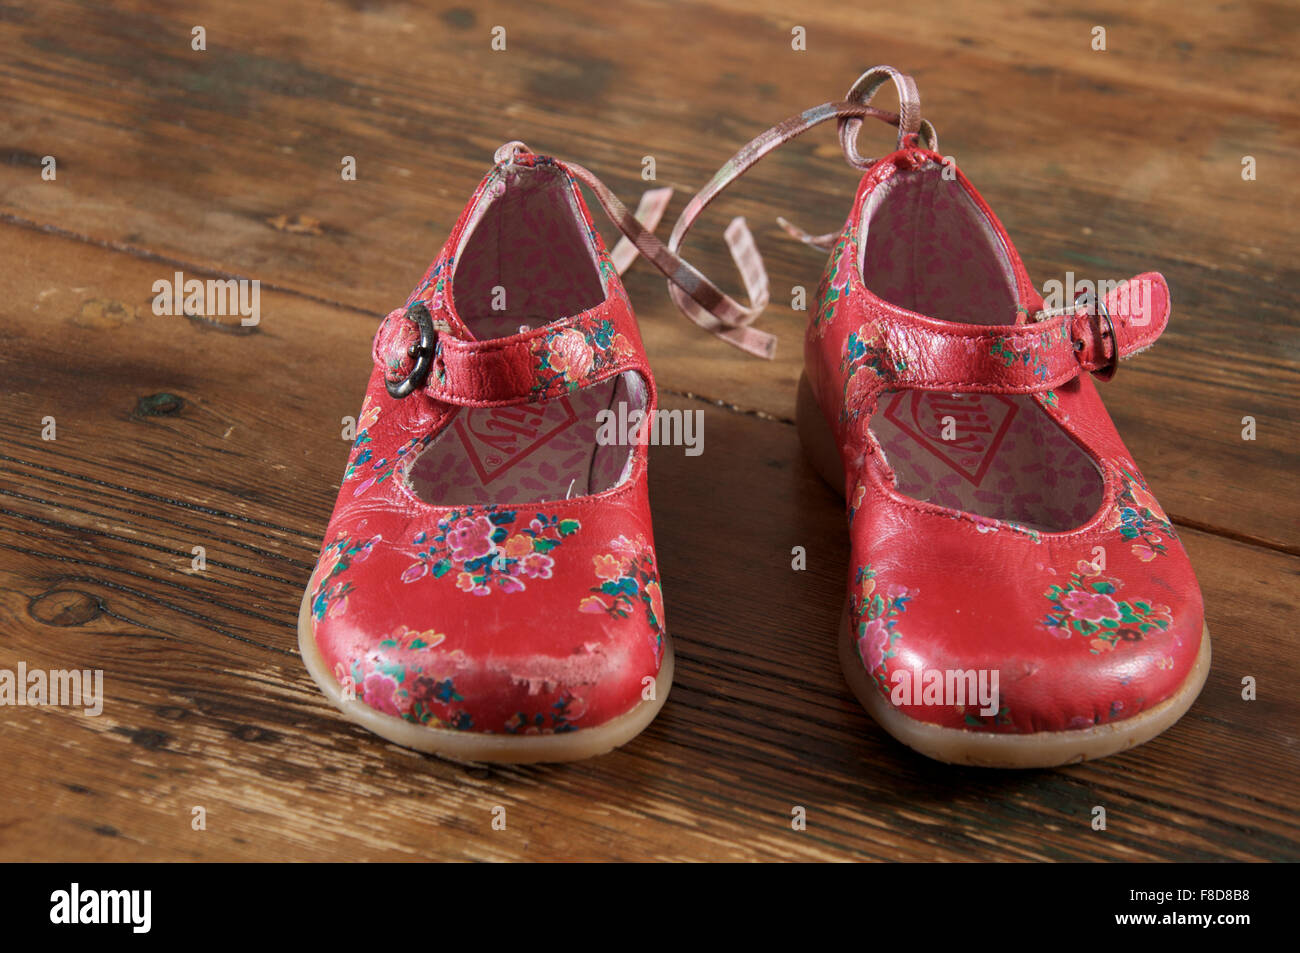 Ein gut getragen paar kleine Mädchen helle rote Schuhe auf einem alten  Holzboden gelegt Stockfotografie - Alamy